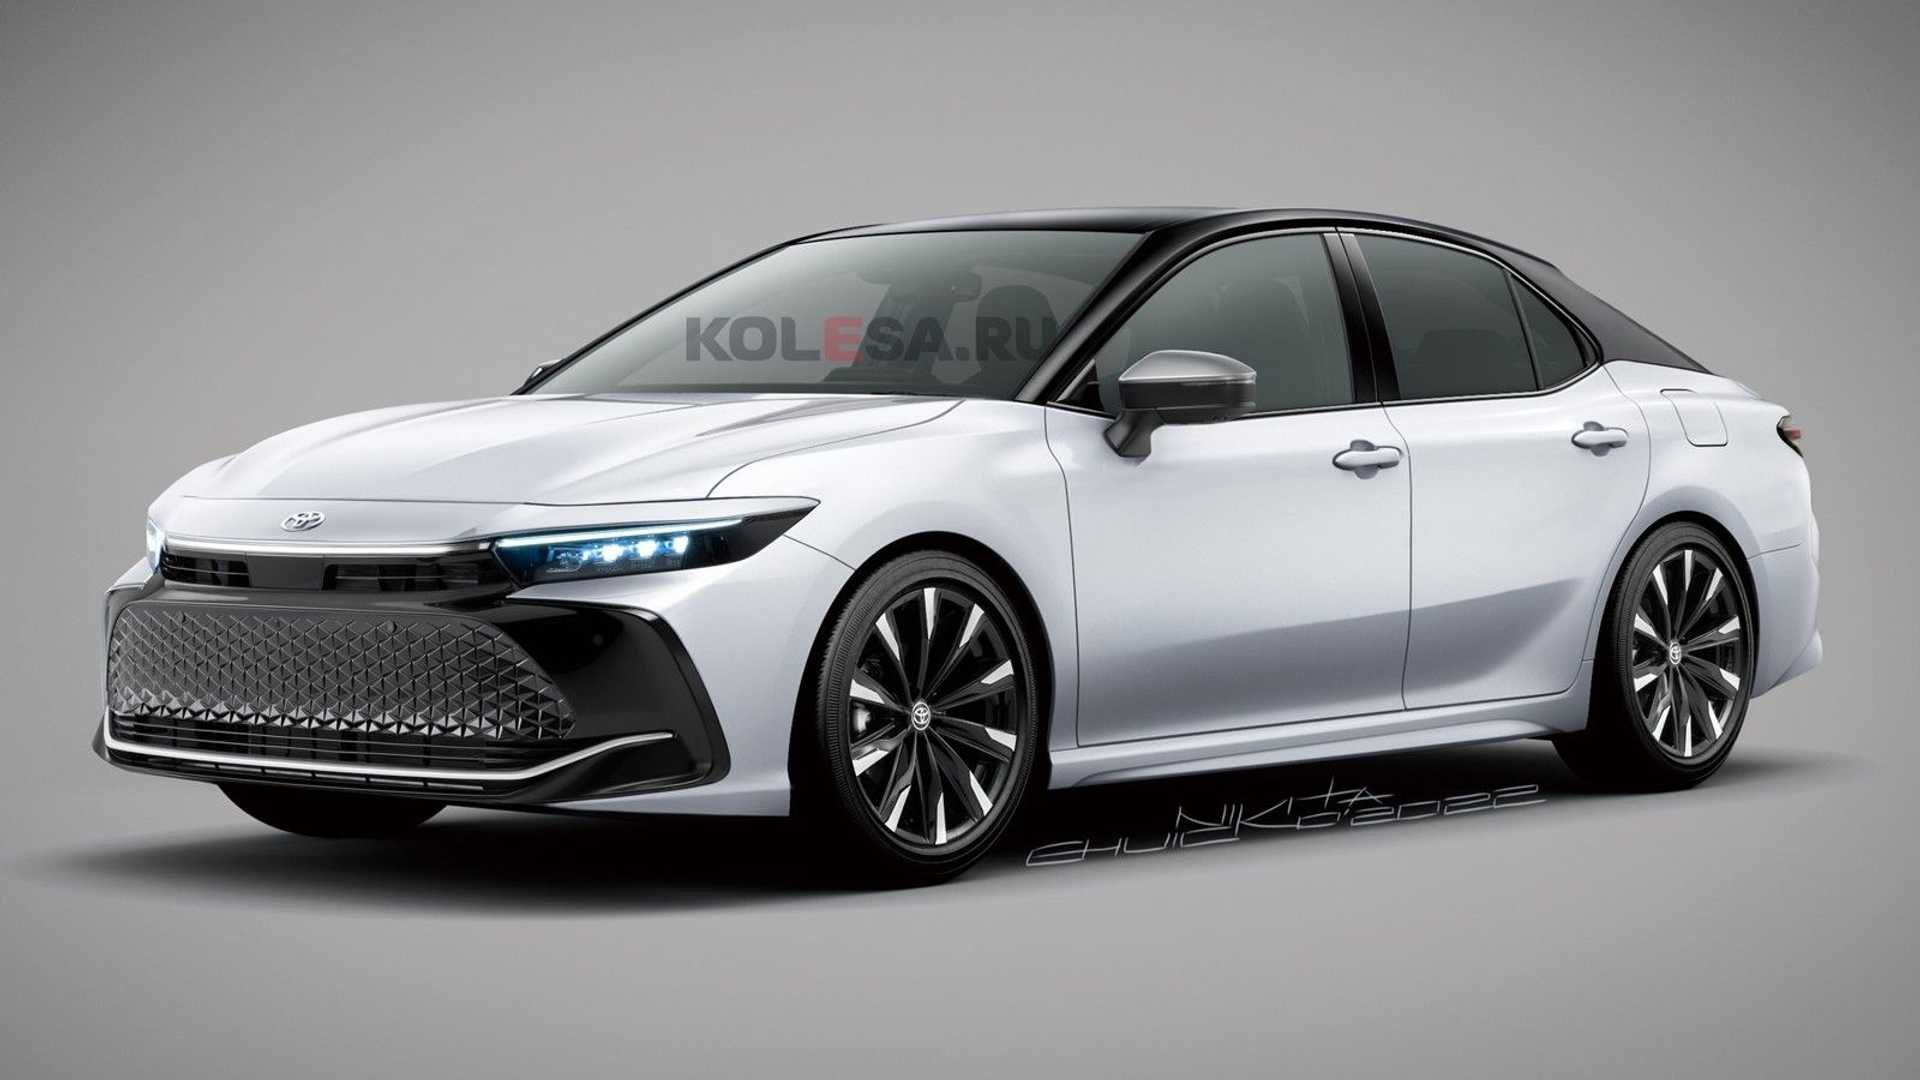 Concept Toyota Camry thế hệ tiếp theo lấy cảm hứng từ Crown